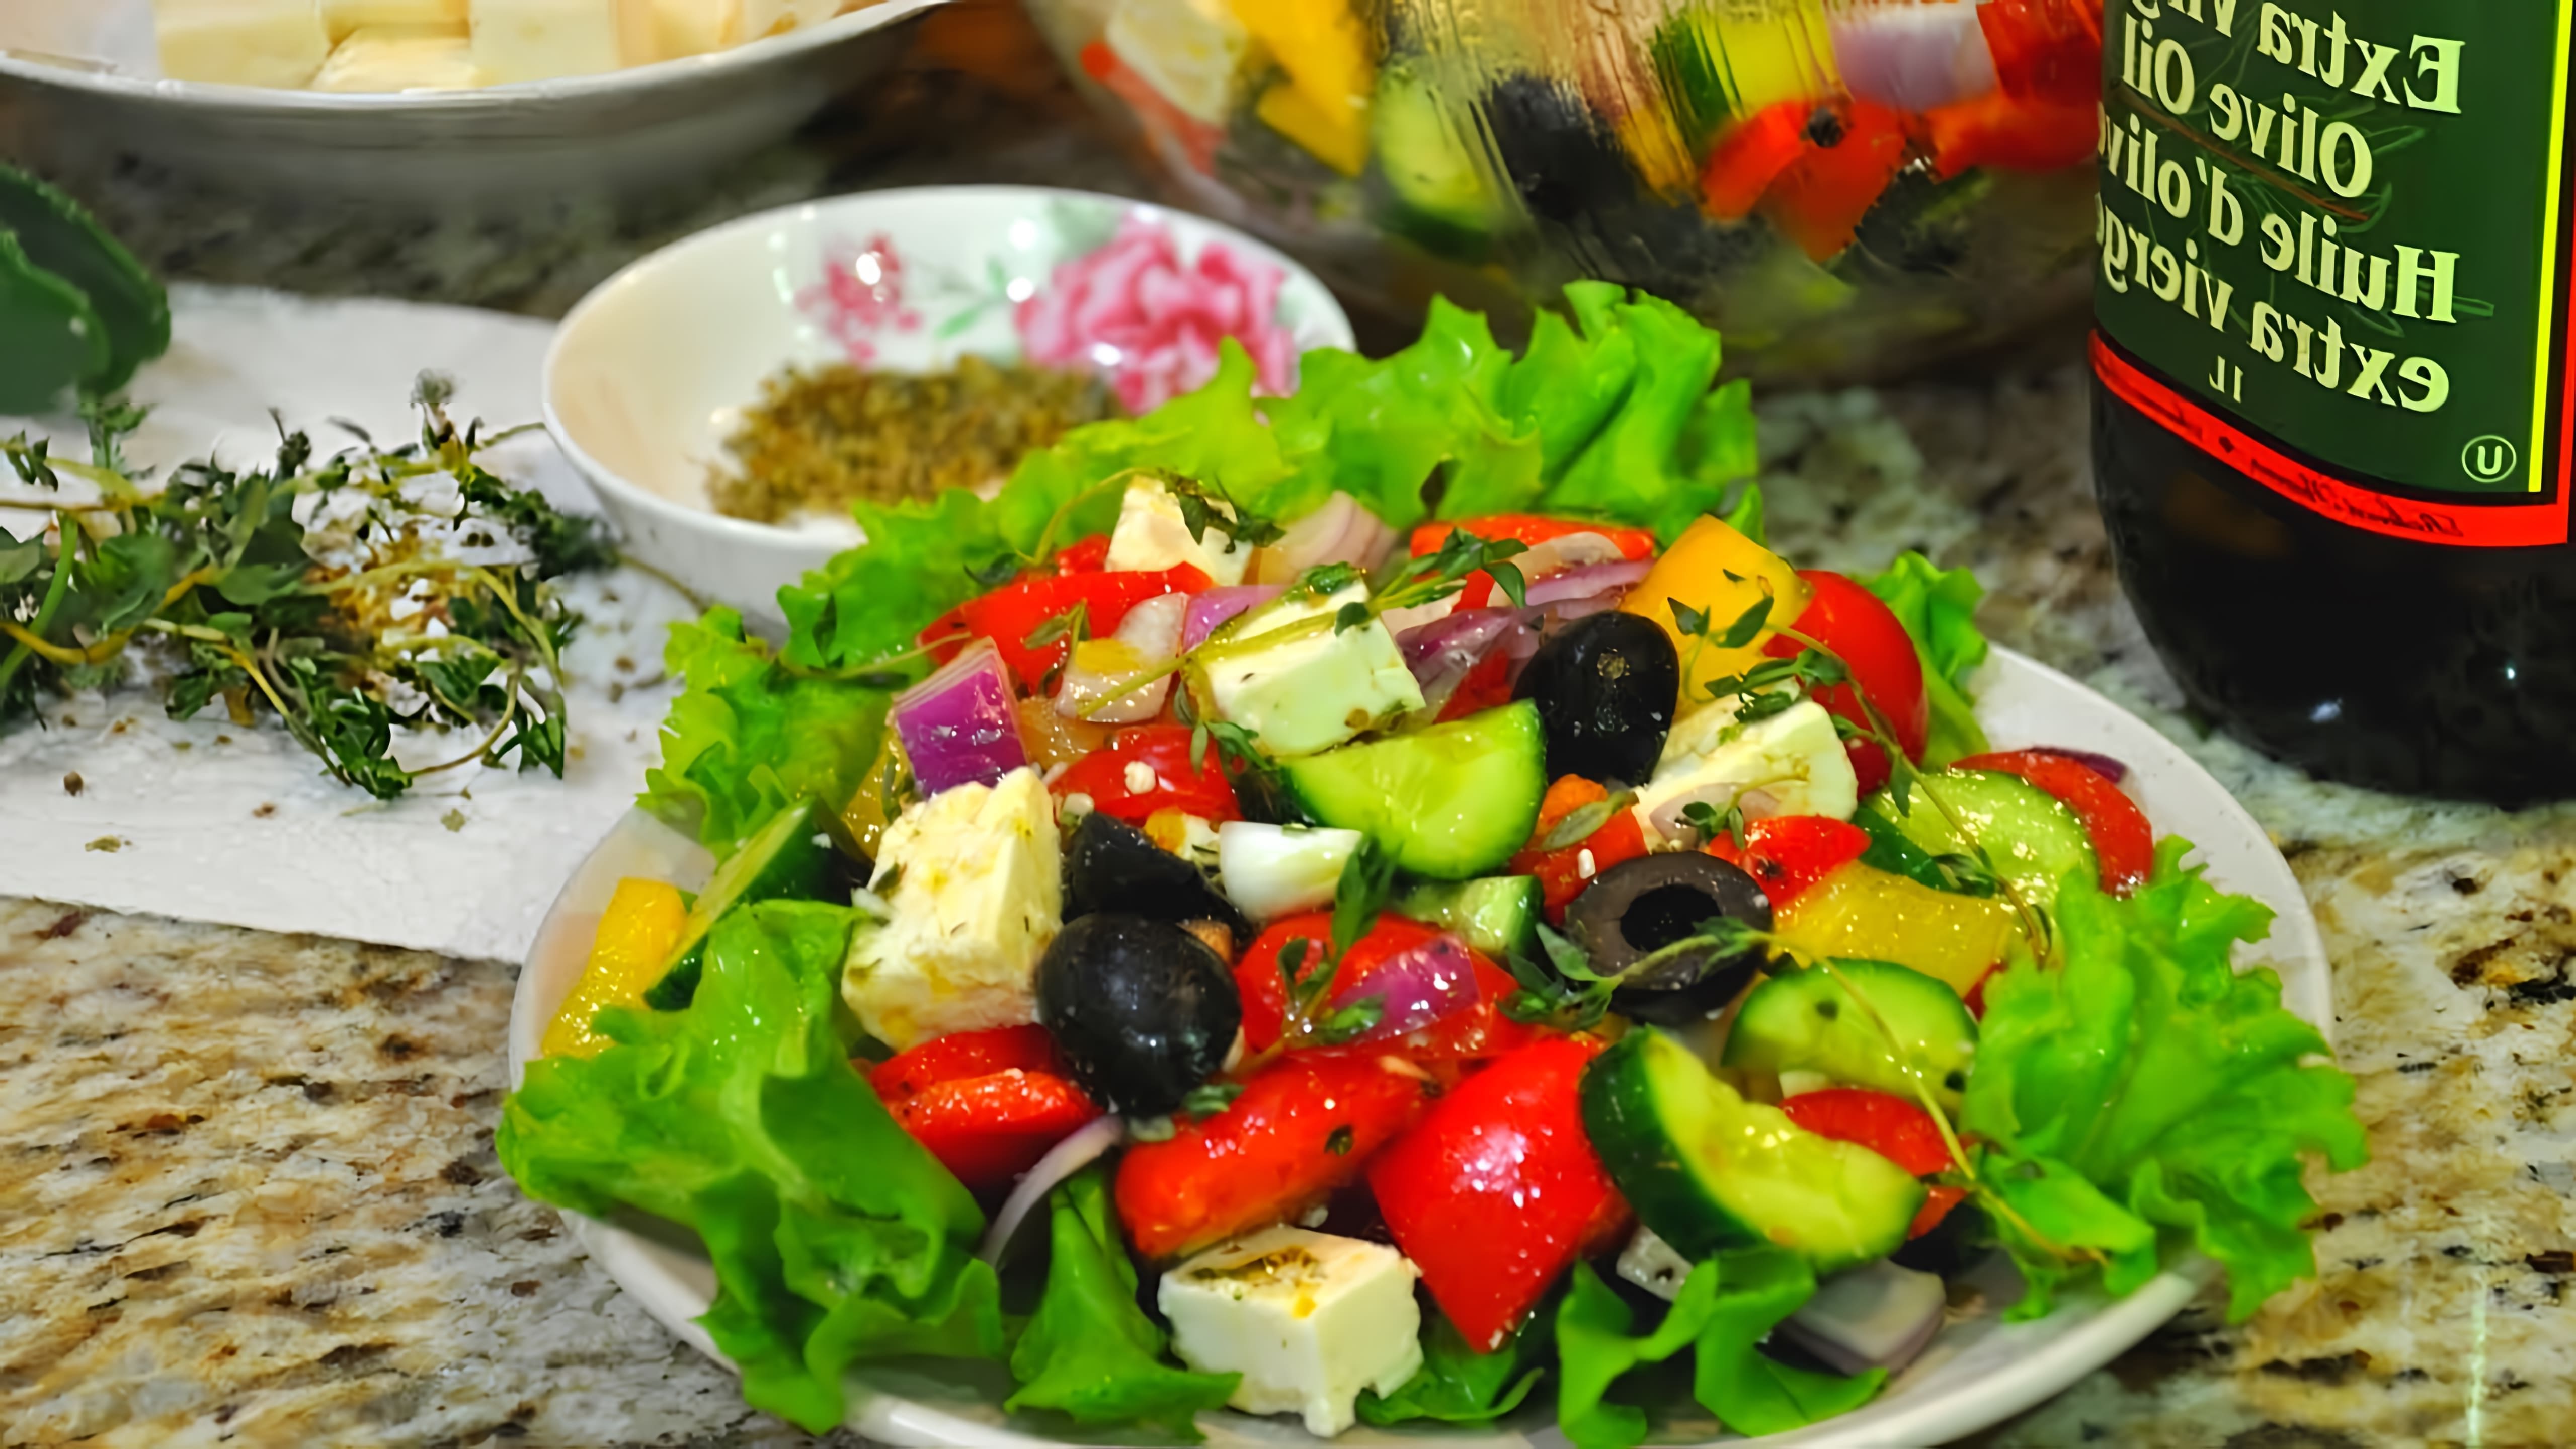 В этом видео демонстрируется процесс приготовления греческого салата с необычной заправкой